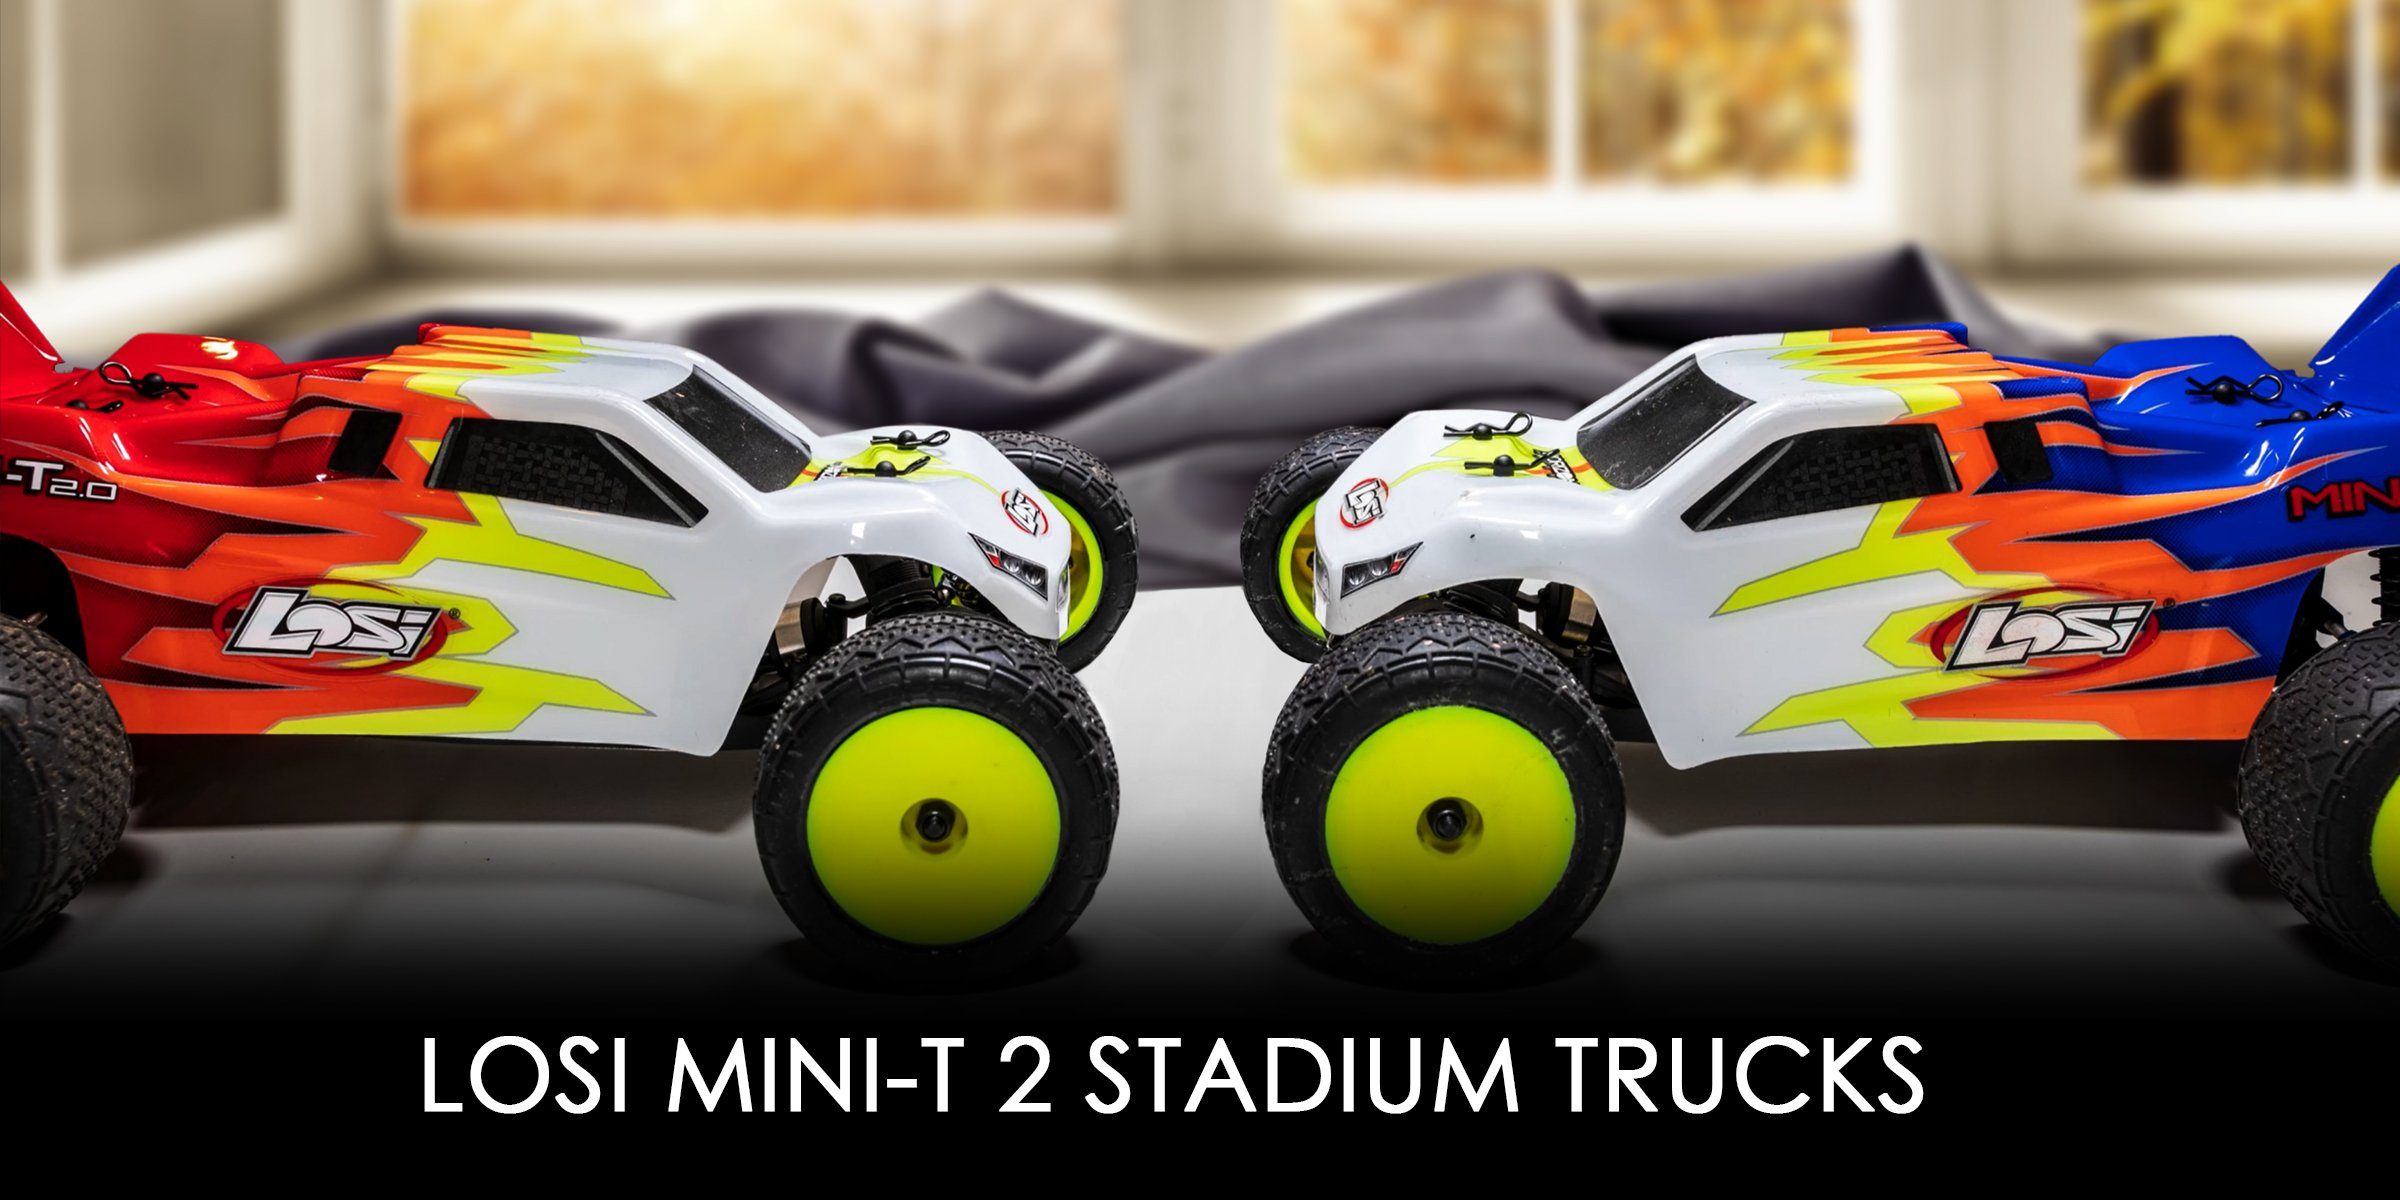 Top 10 Indoor RC Cars - #1 Losi Mini-T 2.0 1:18 Stadium Trucks